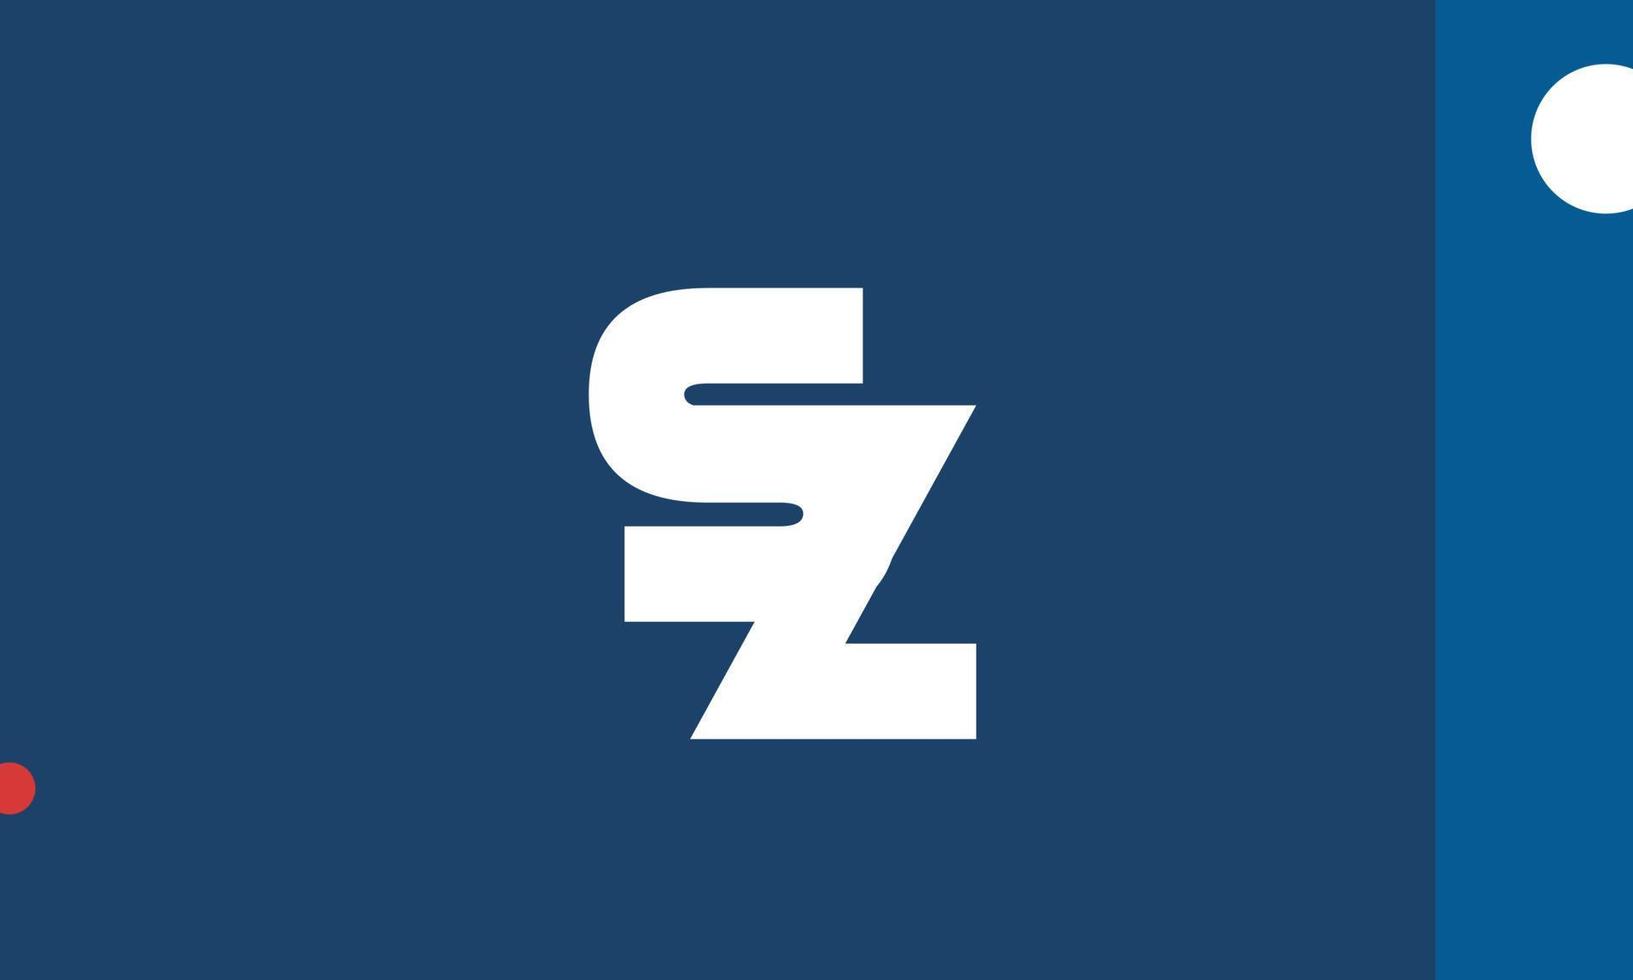 letras del alfabeto iniciales monograma logo sz, zs, s y z vector